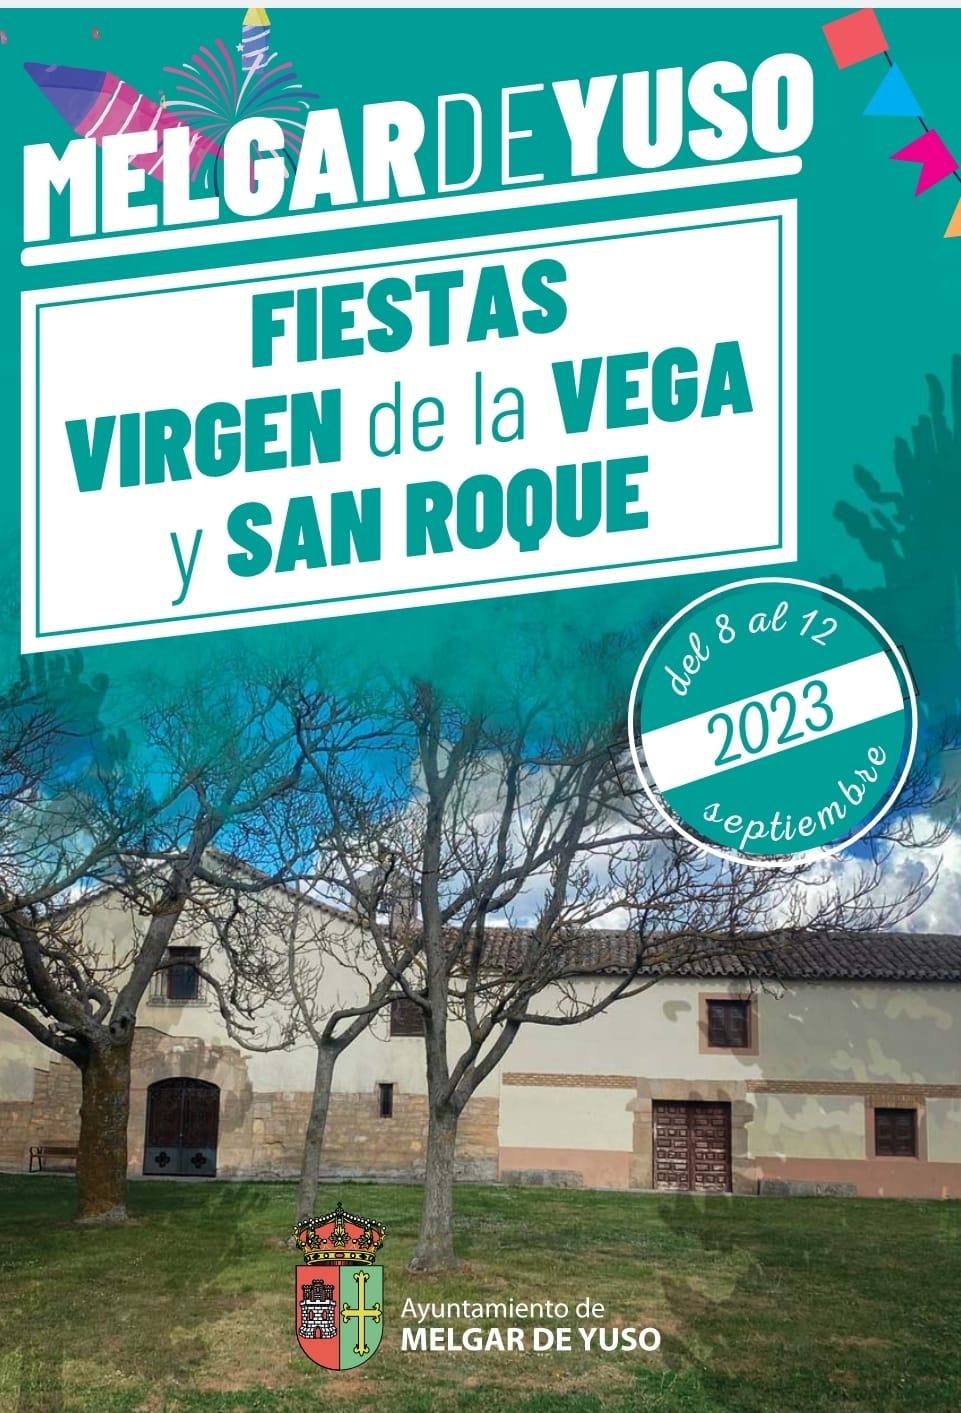 Fiestas de Virgen de la Vega y San Roque - Melgar de Yuso0